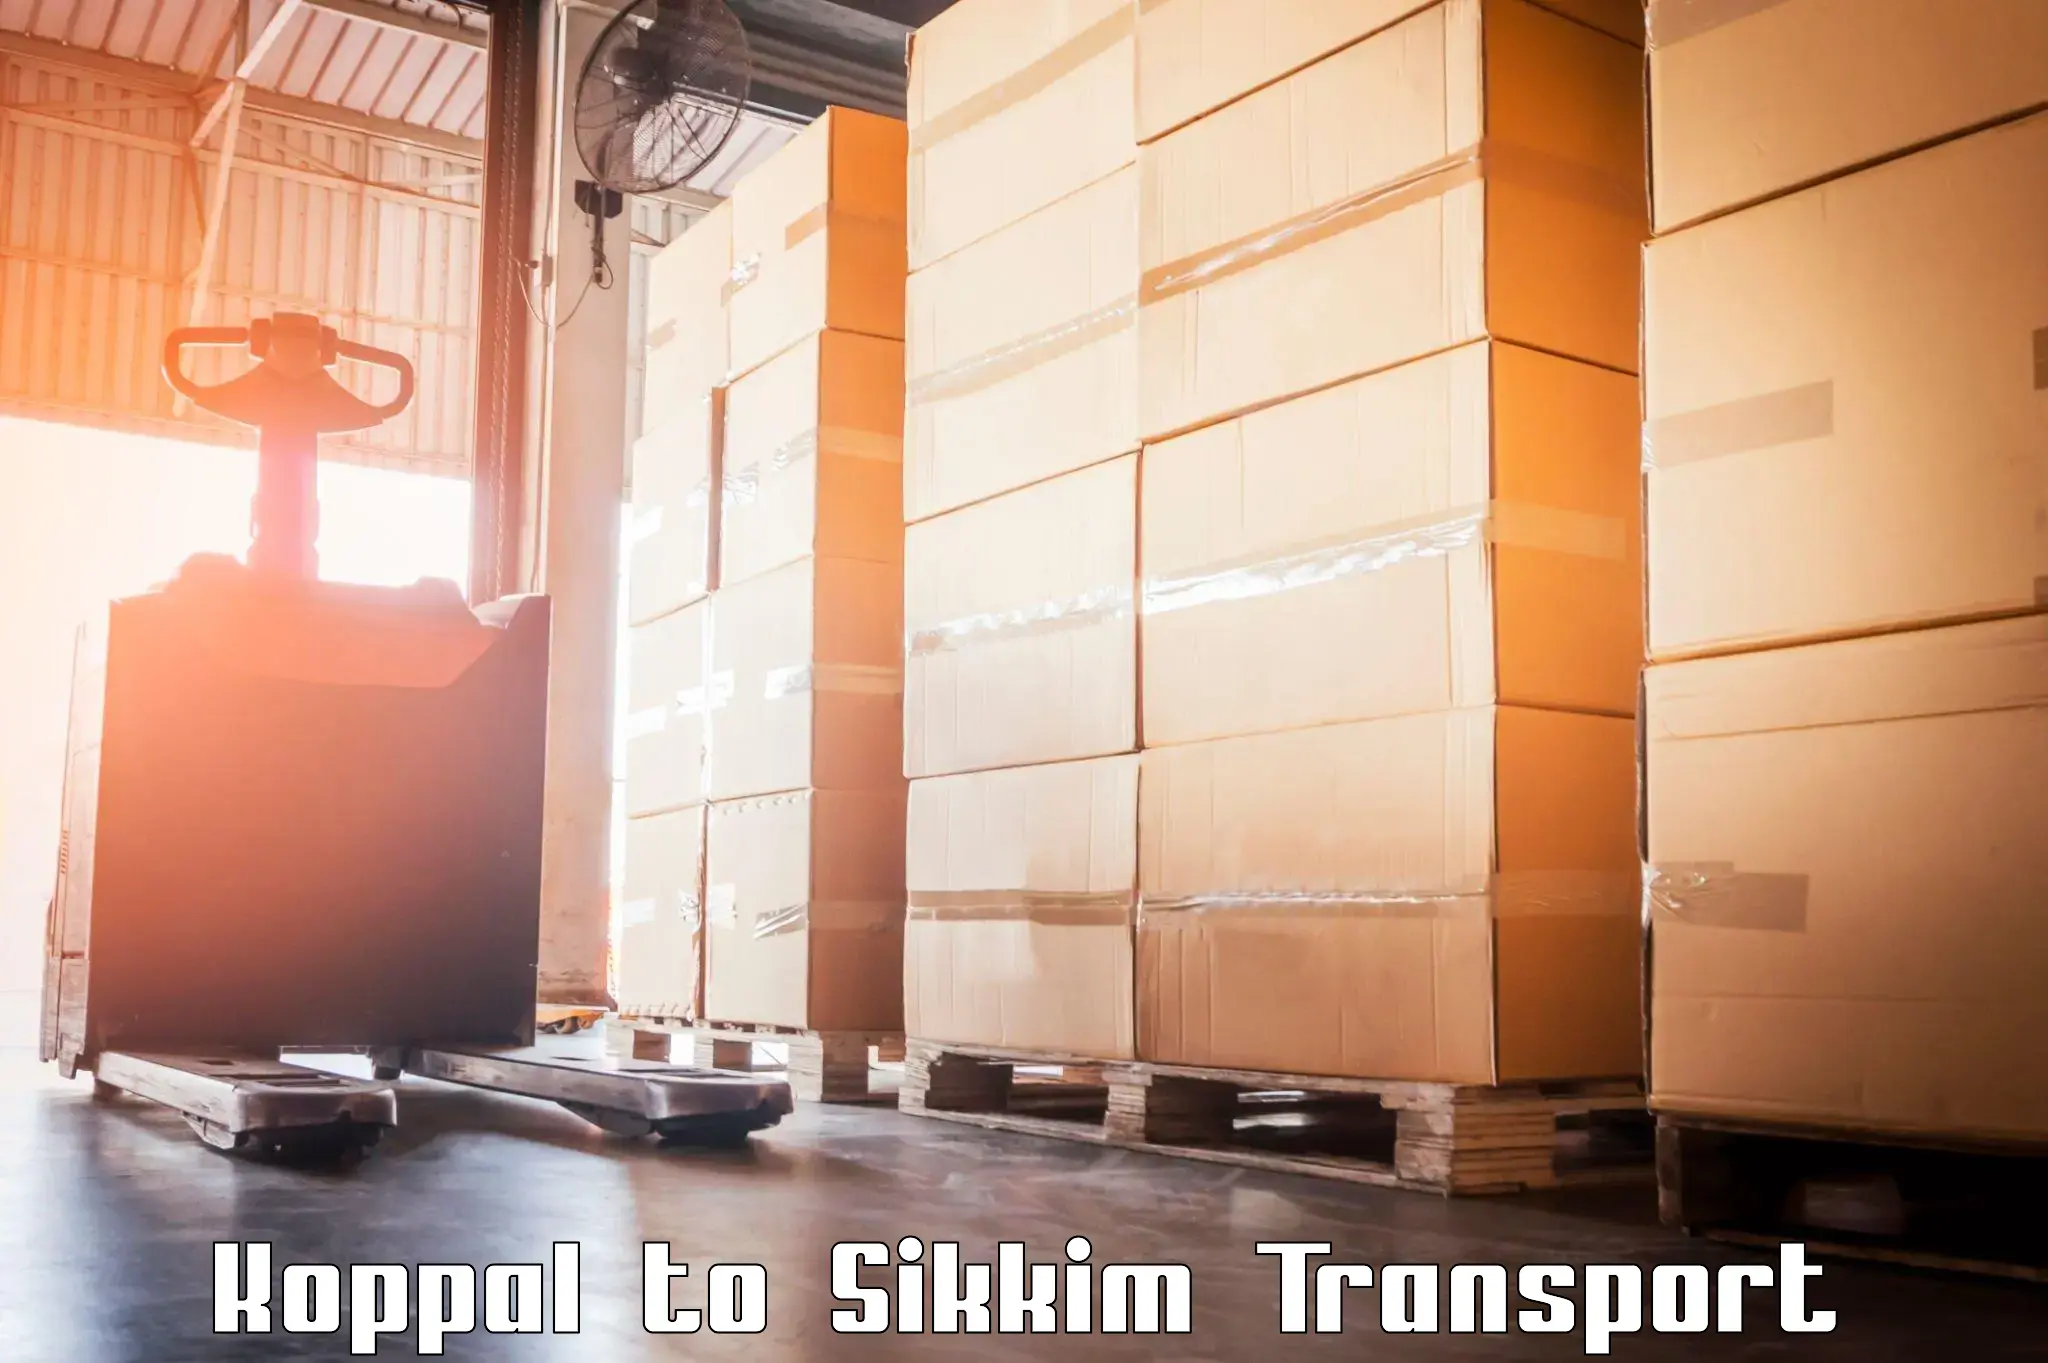 Interstate transport services Koppal to Singtam